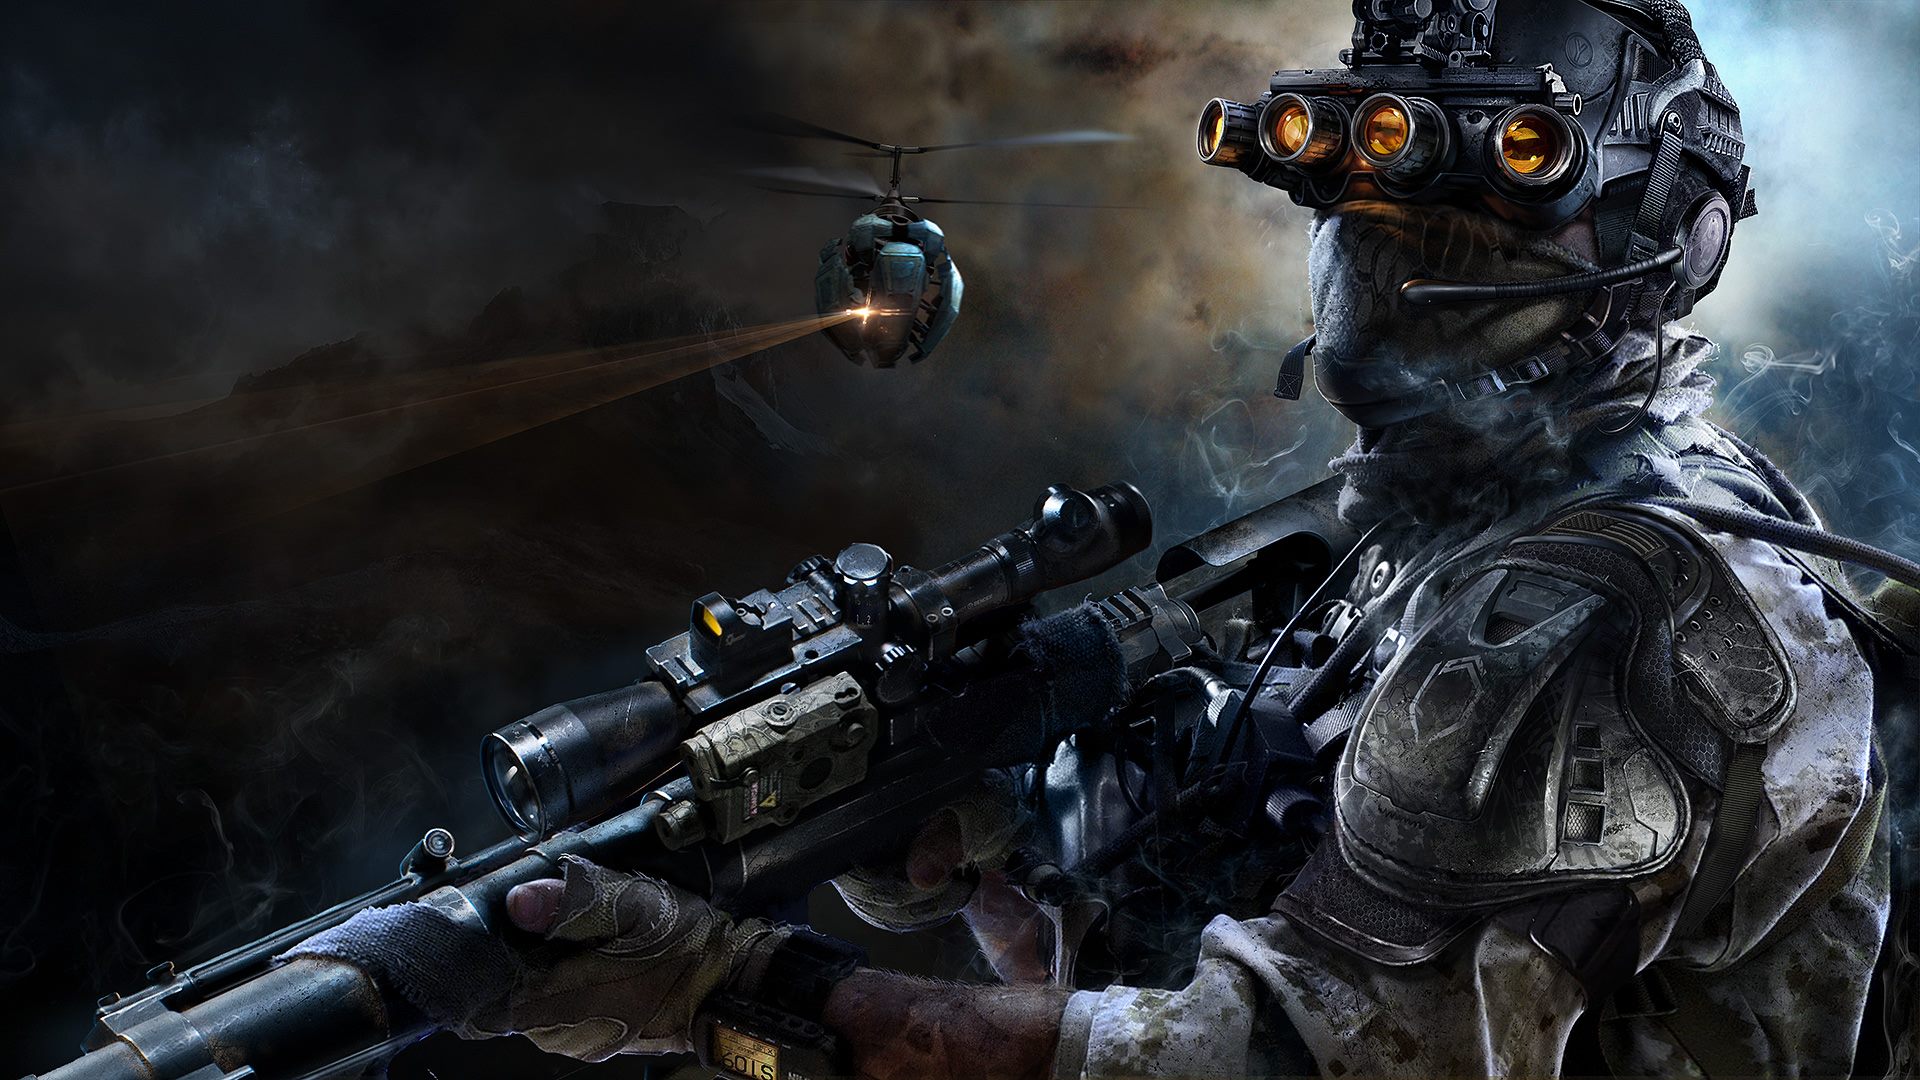 Descargar fondos de escritorio de Sniper: Ghost Warrior 3 HD